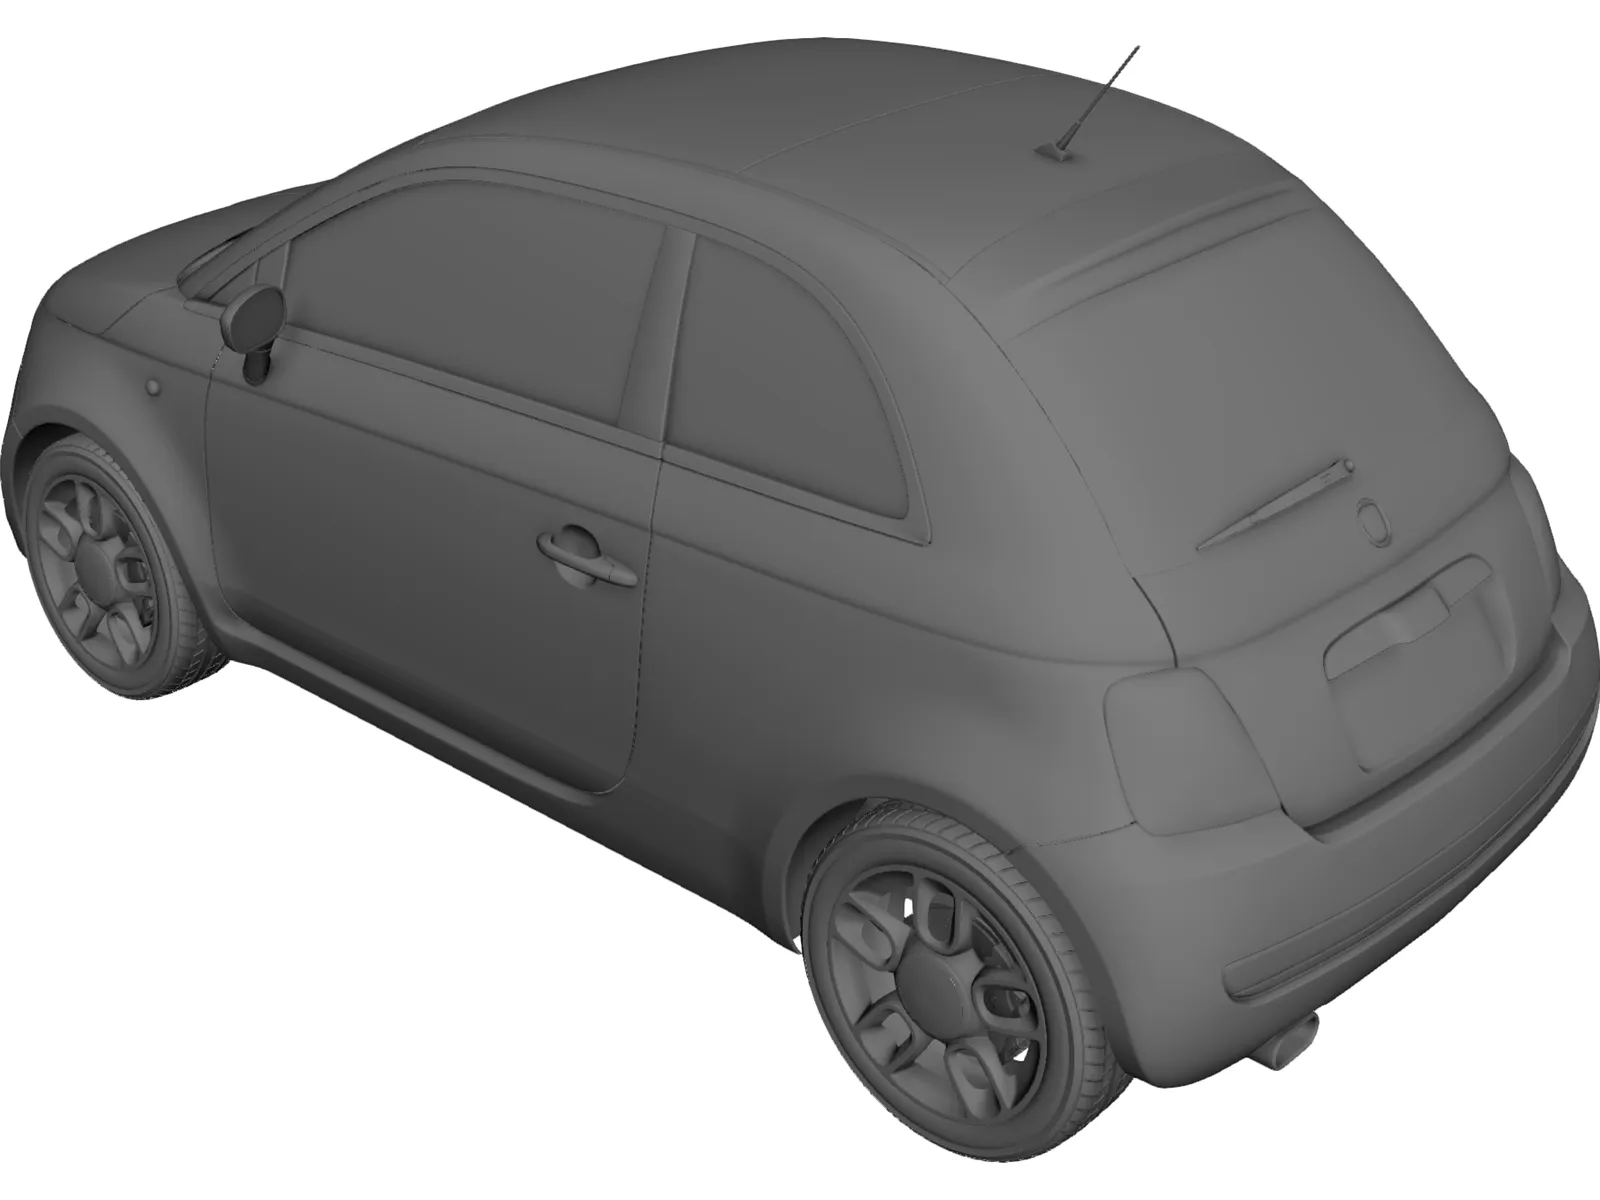 Fiat 500 3D Model